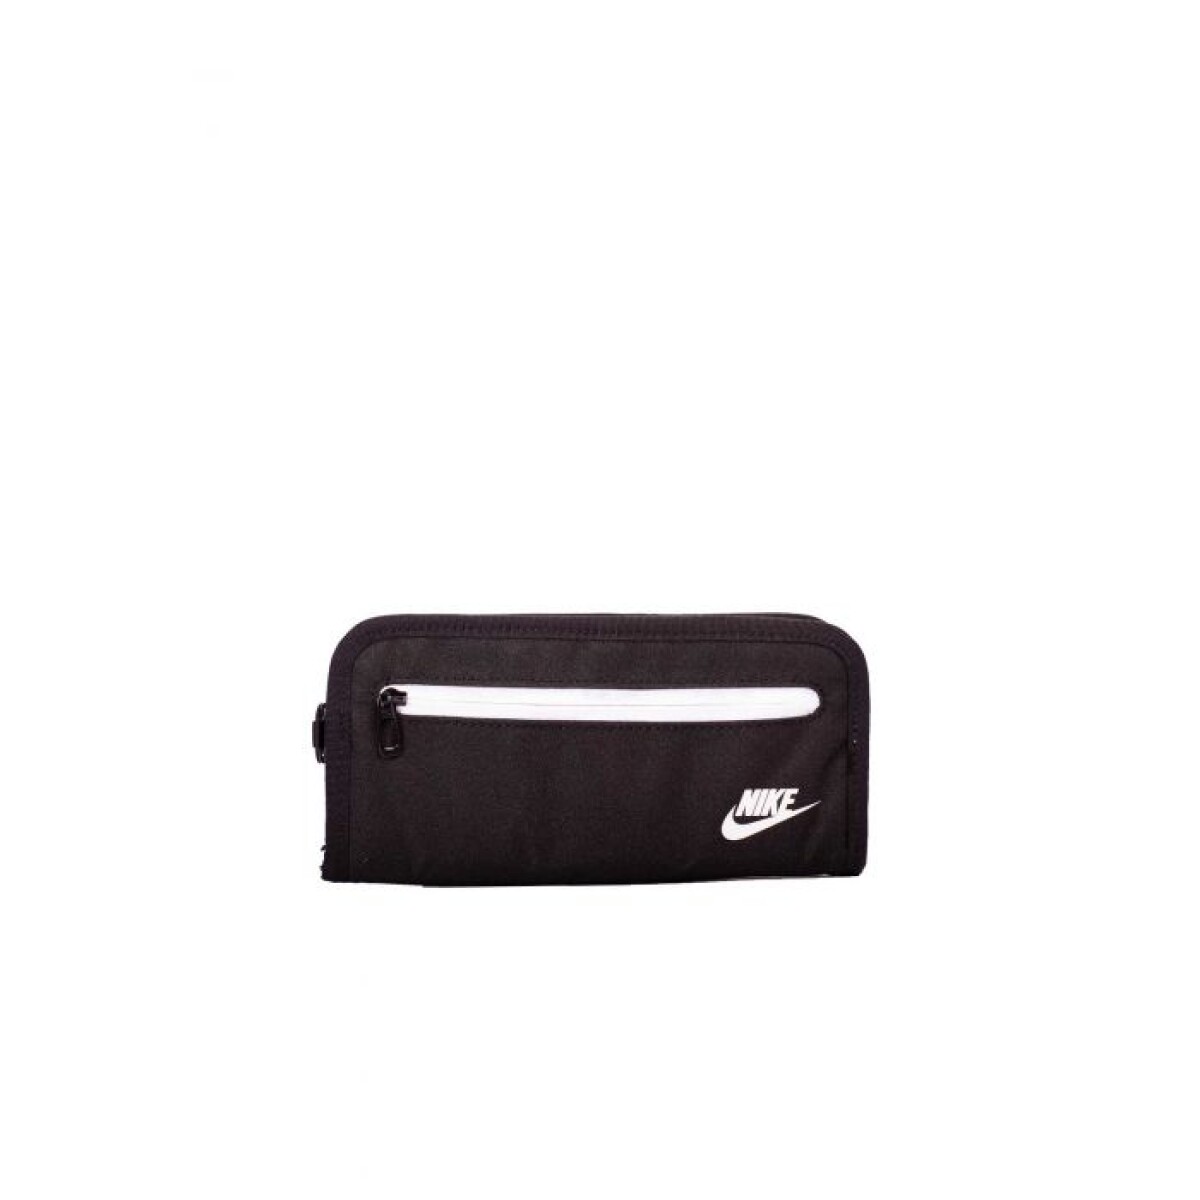 Billetera Nike Heritage Long Wallet Black/White - S/C 